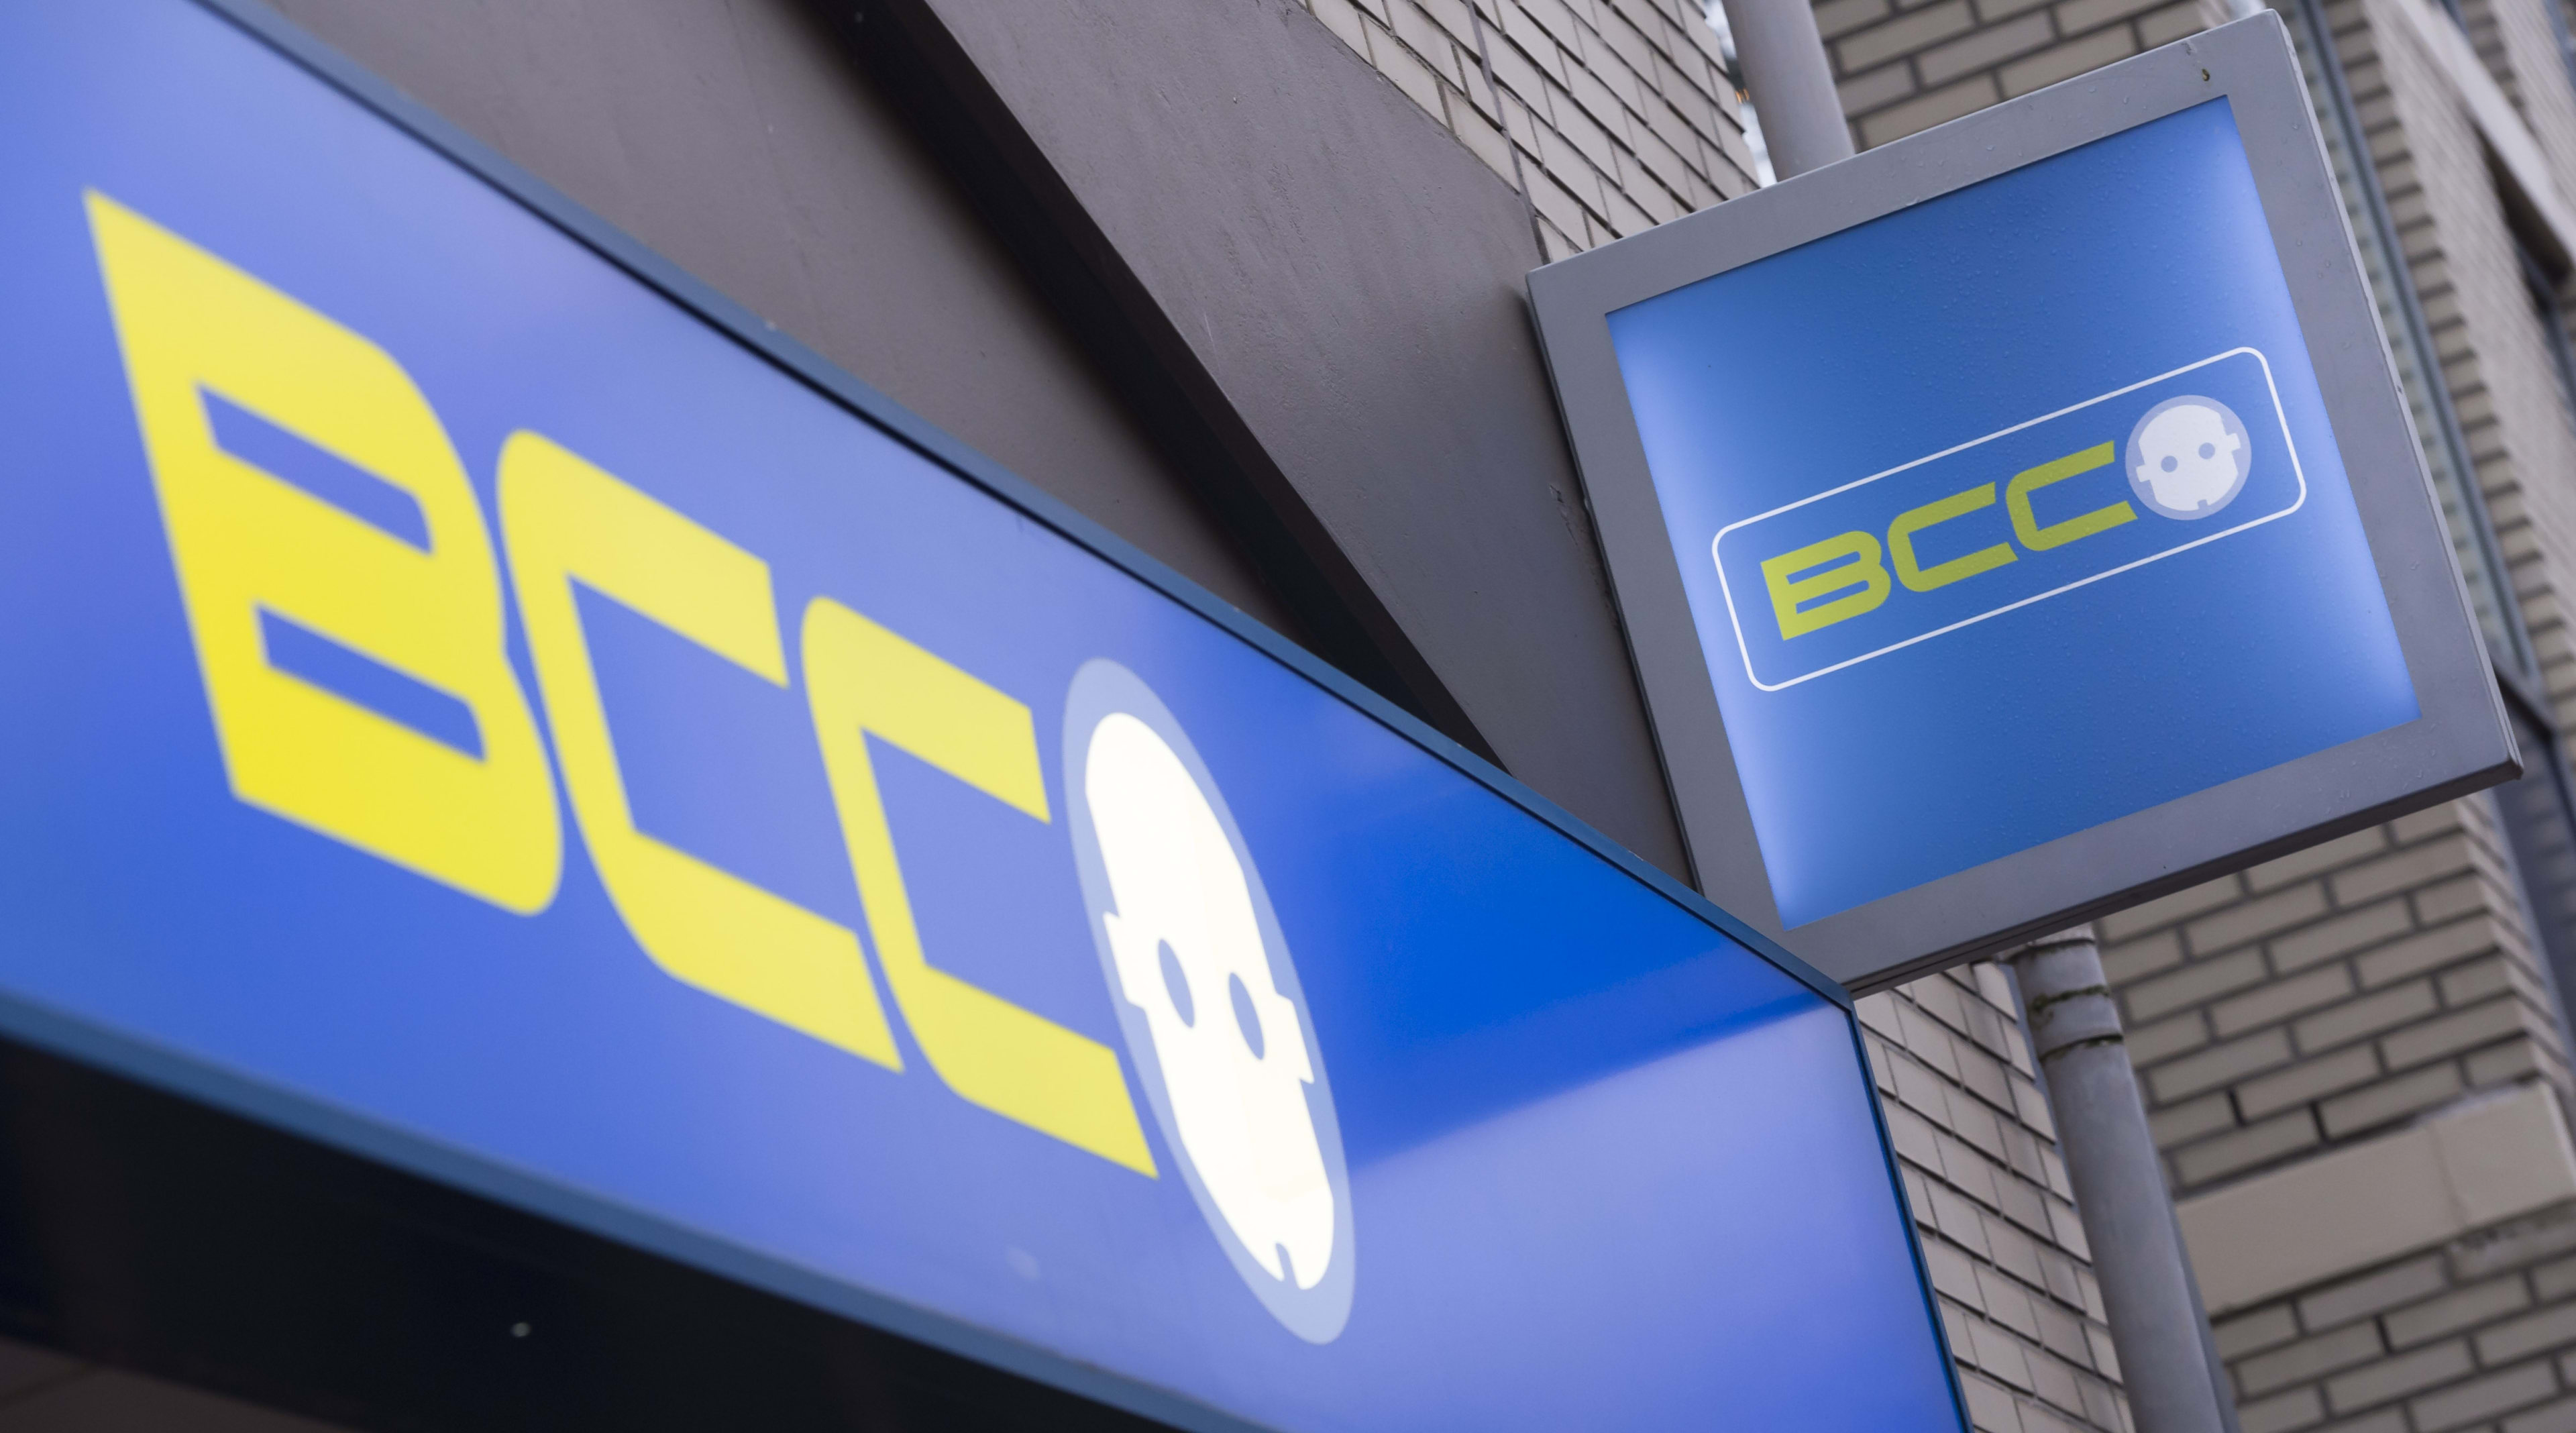 Winkels BCC ook woensdag dicht na onrust faillissementsuitverkoop